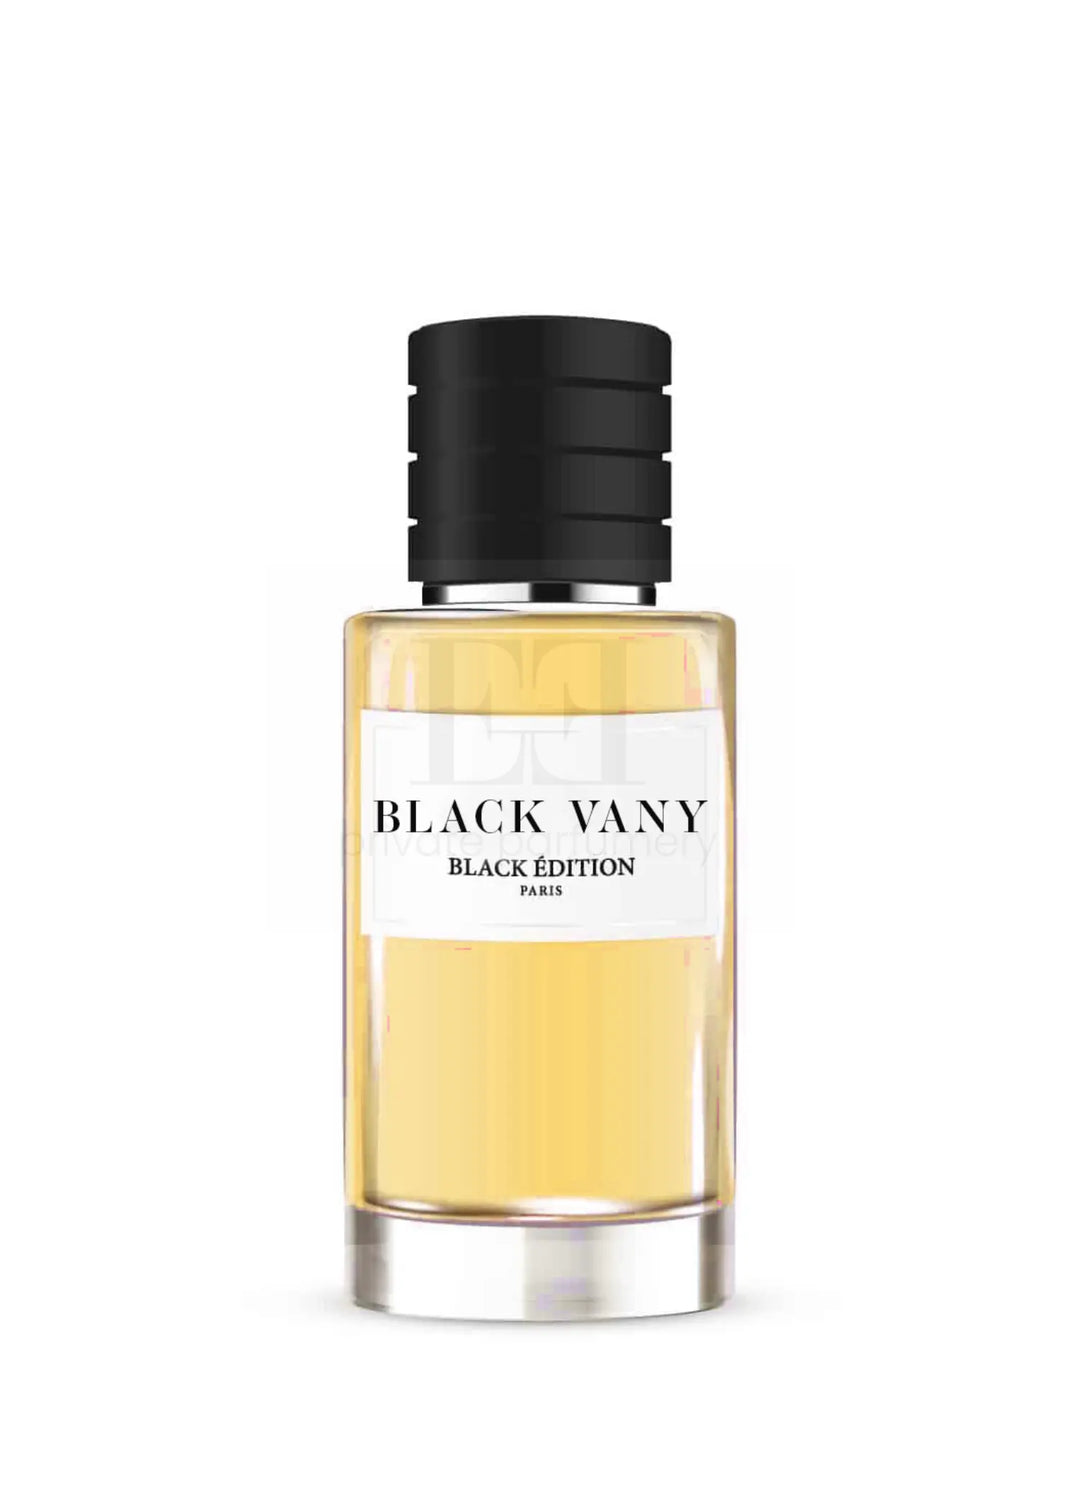 BLACK VANY by Black Édition - Emblème Parfums